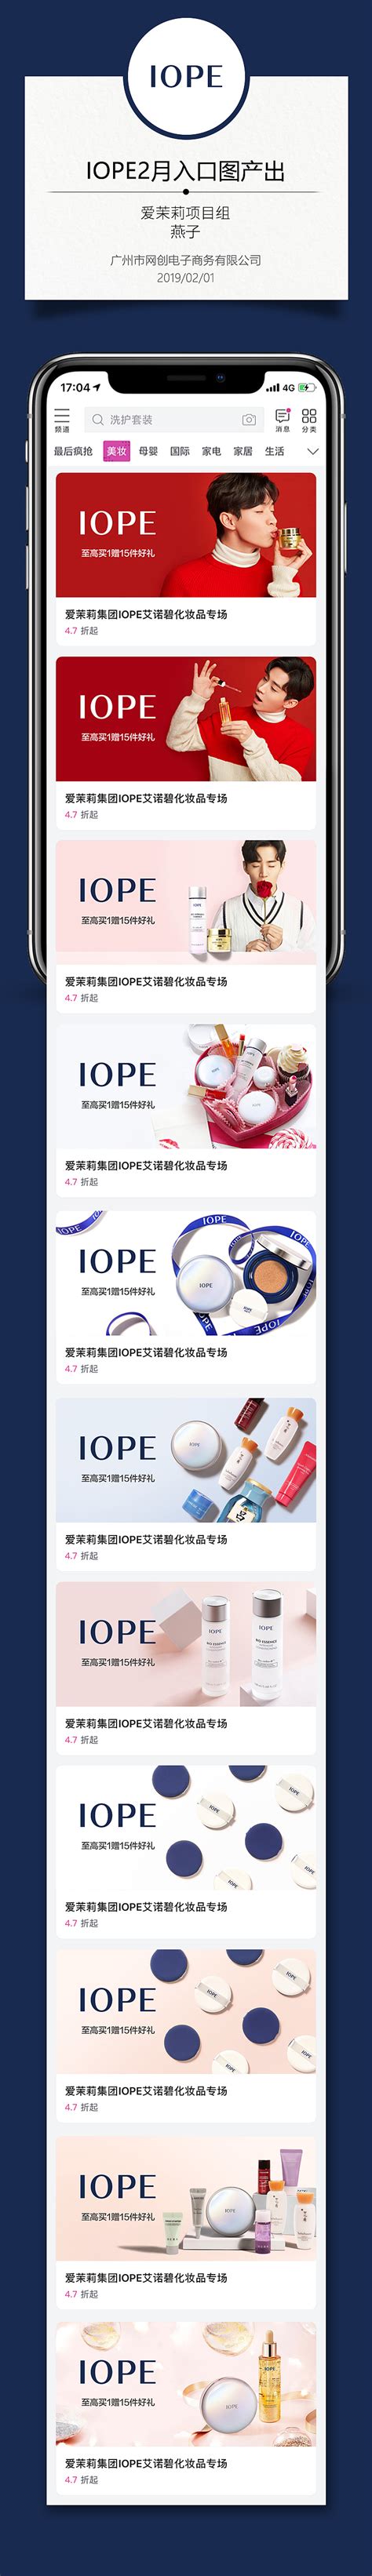 唯品会发布多巴胺彩妆榜单，多元数据透视潮流新趋势 - 周到上海